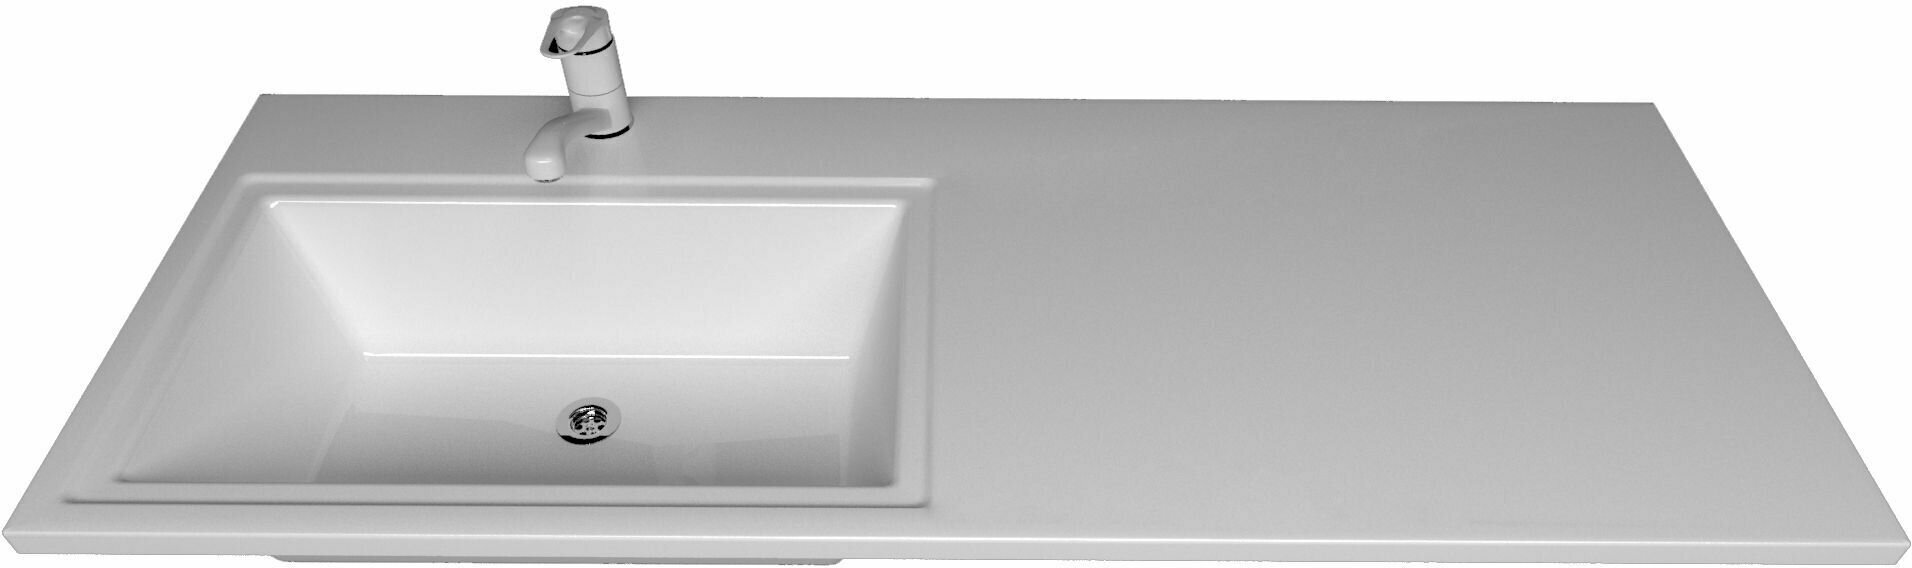 Марсал 120 - мебельная накладная раковина из литьевого мрамора левая с кронштейном. - фотография № 2